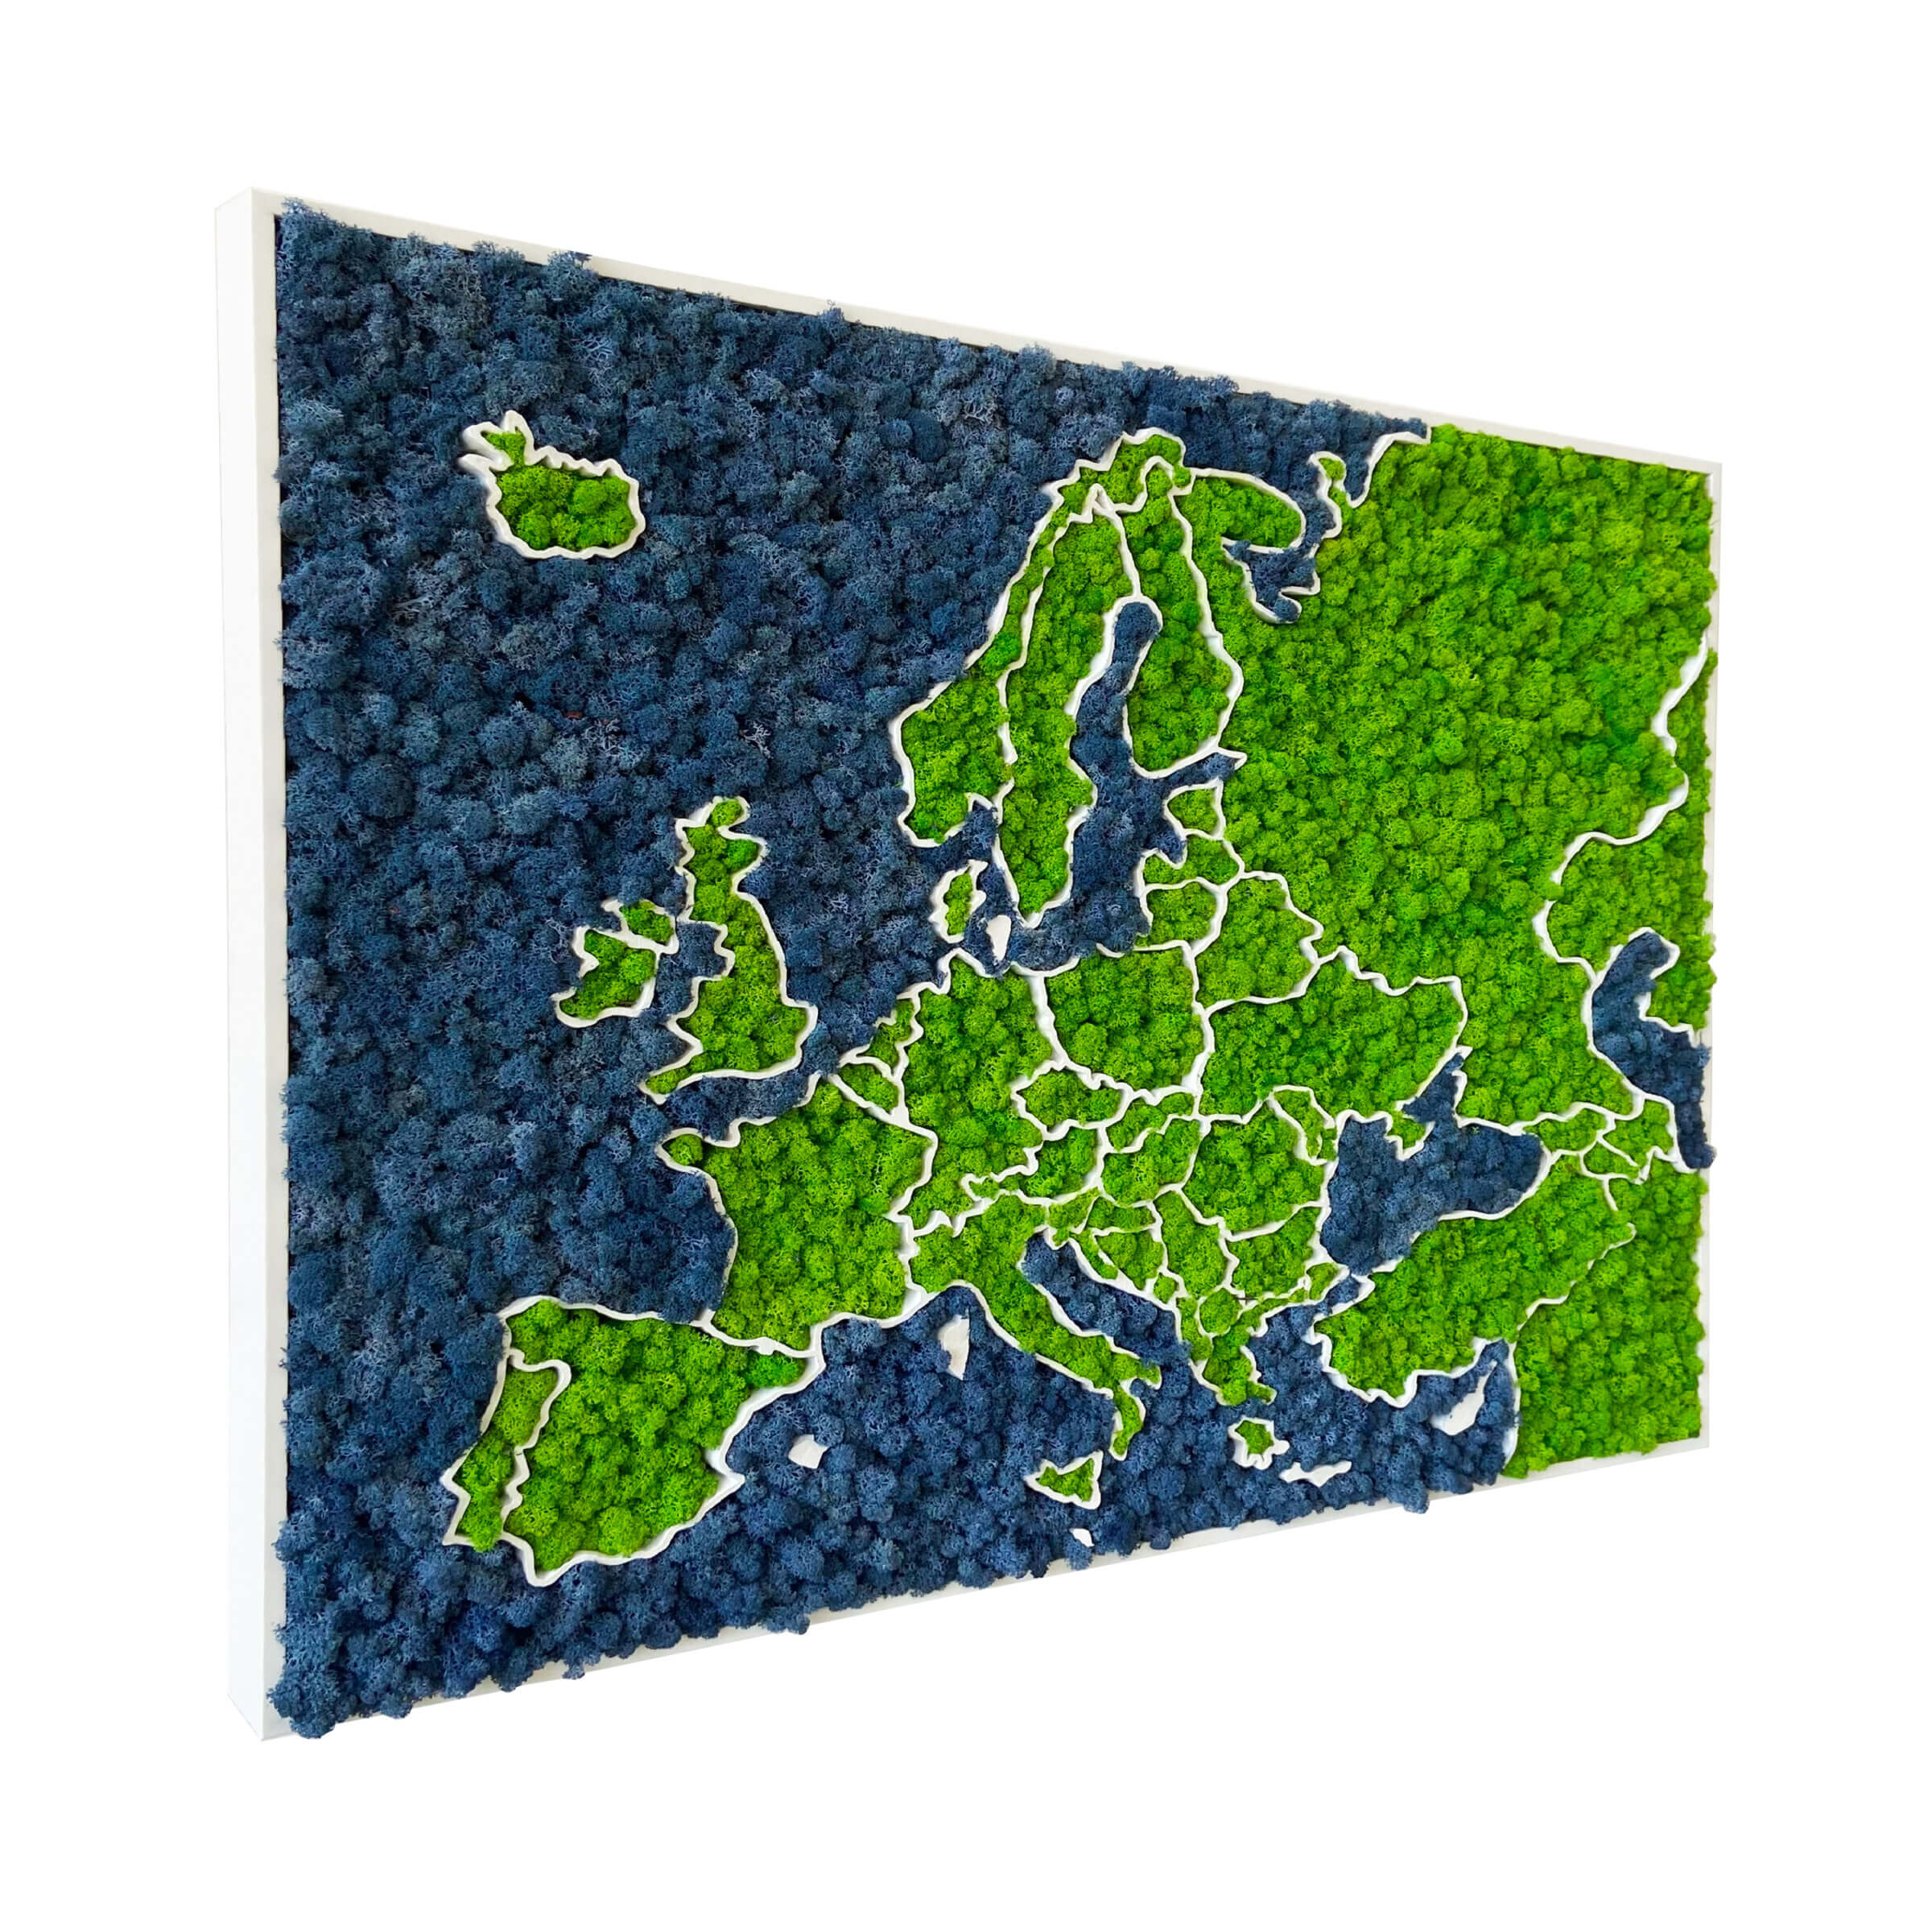 3D Europakarte aus Moos - organische Flechten